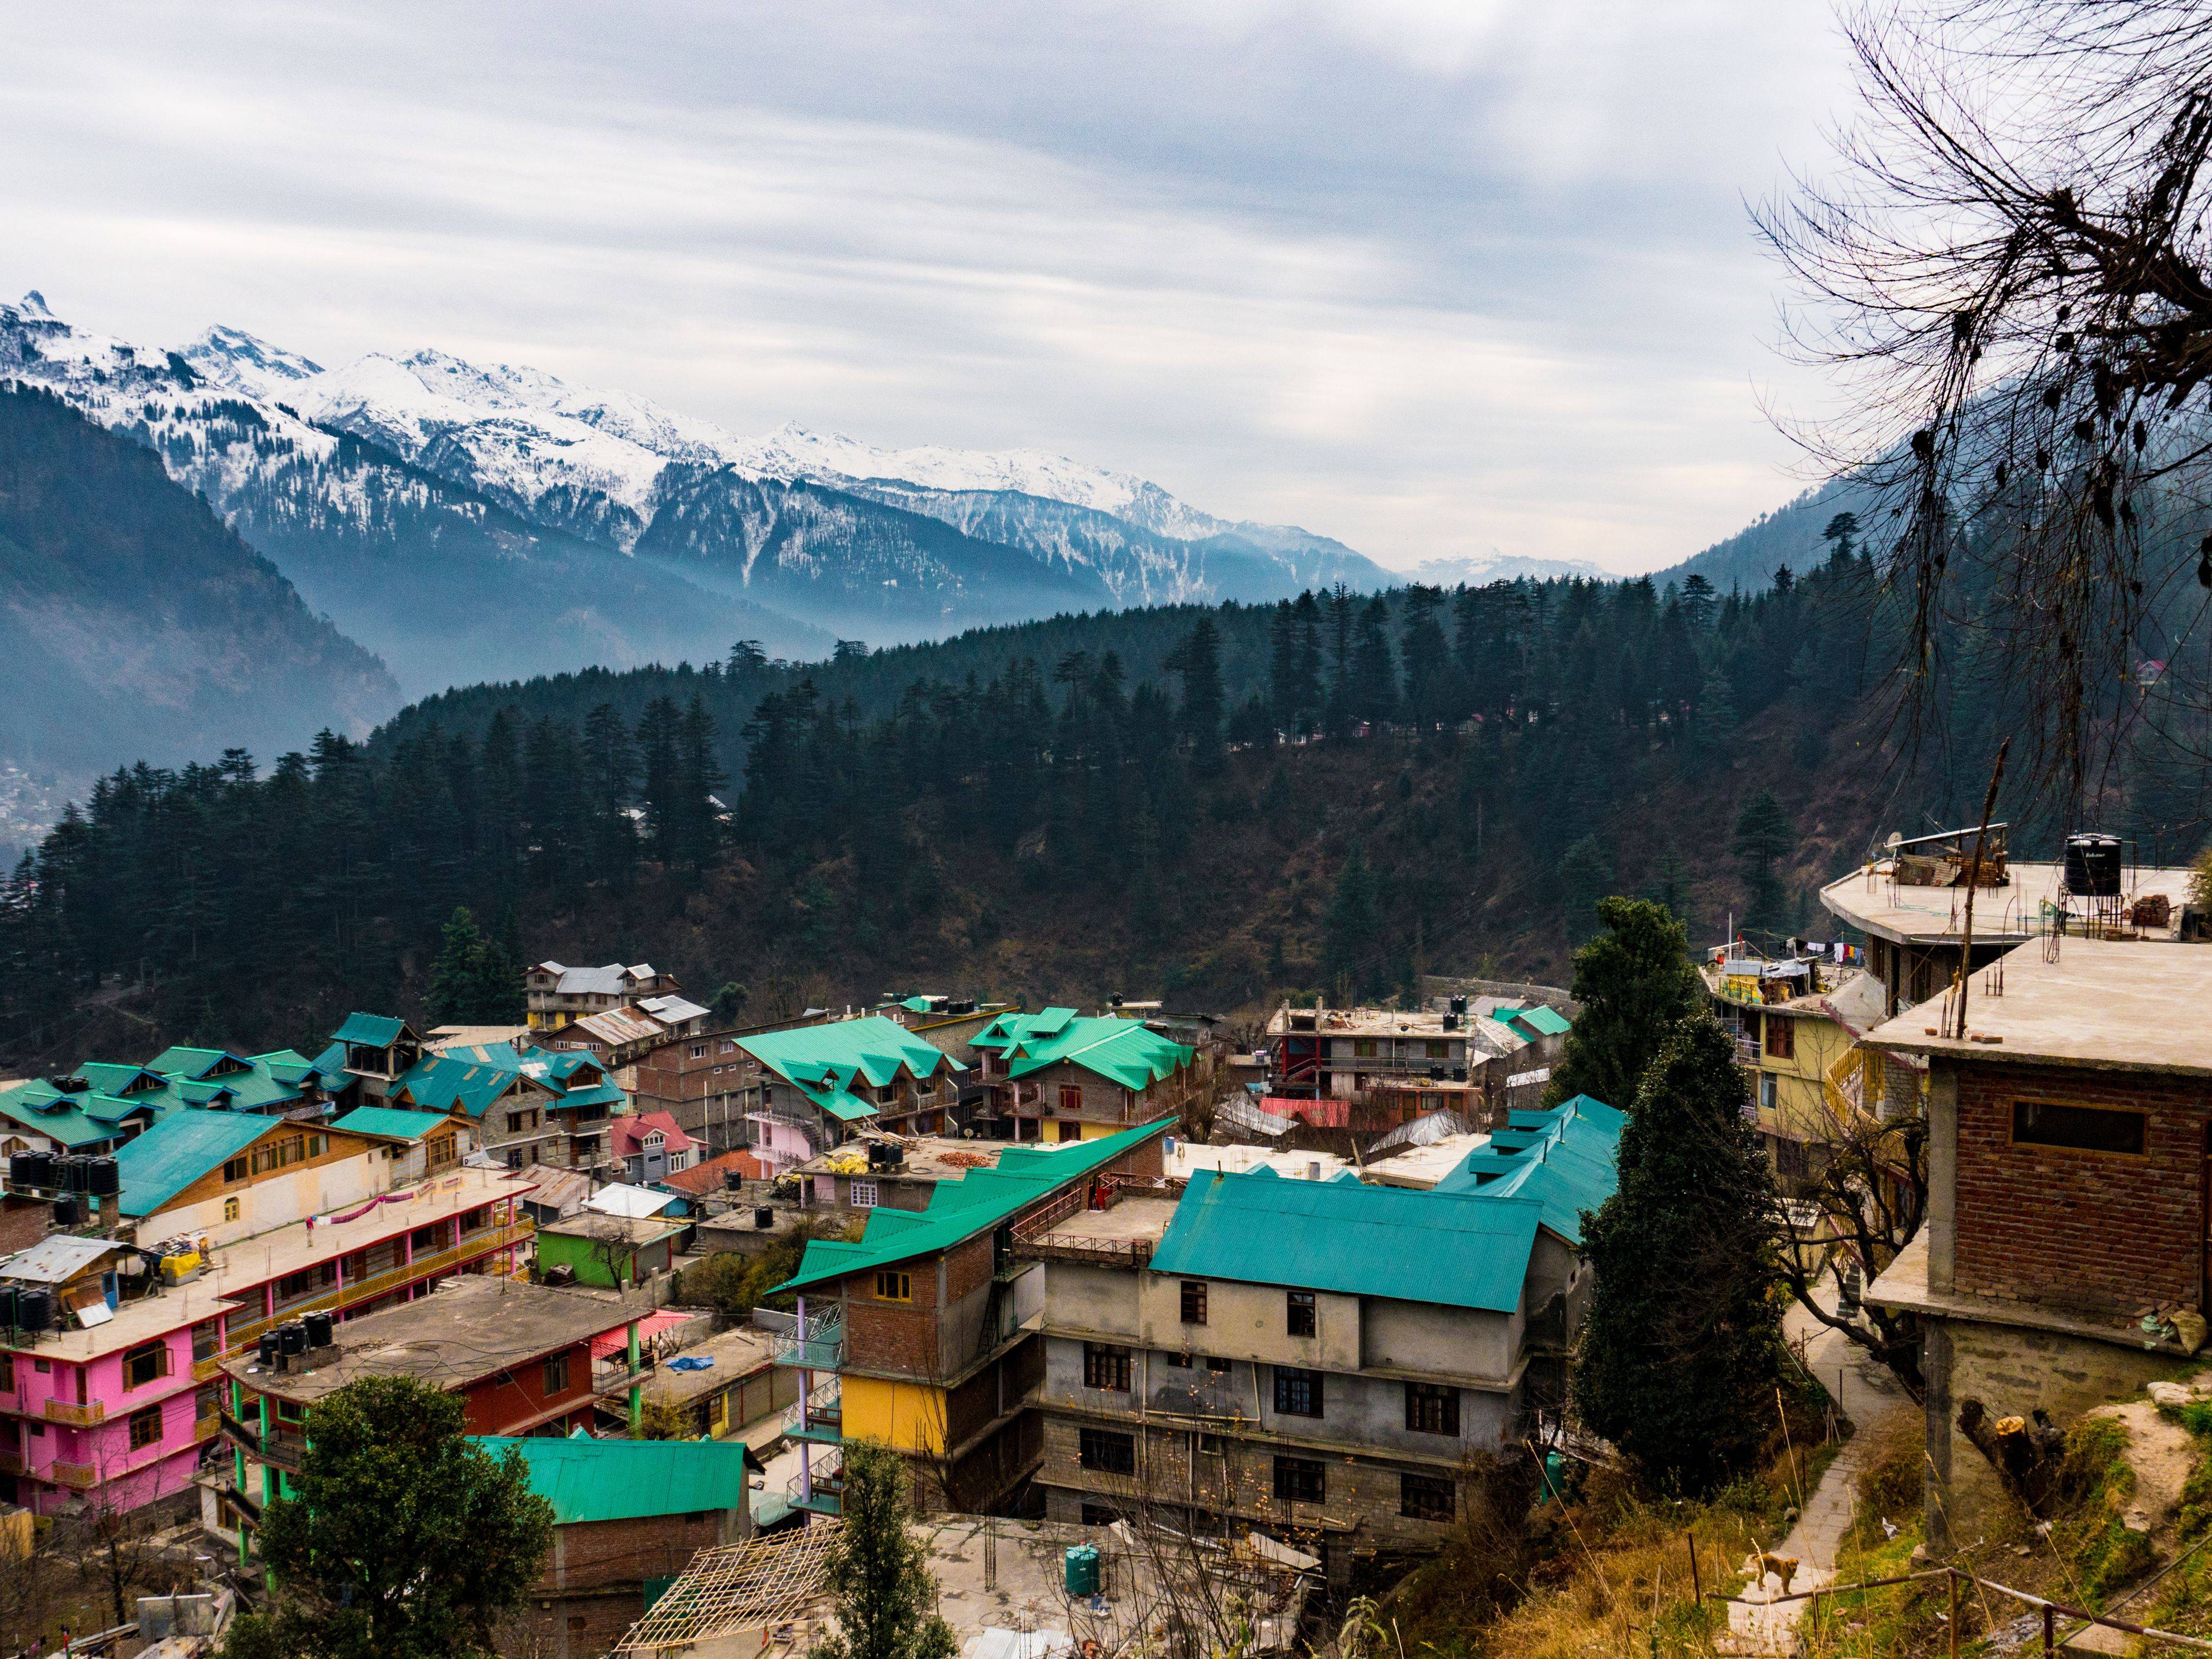 Гималаи, индия — города и районы, экскурсии, достопримечательности гималаев от «тонкостей туризма»